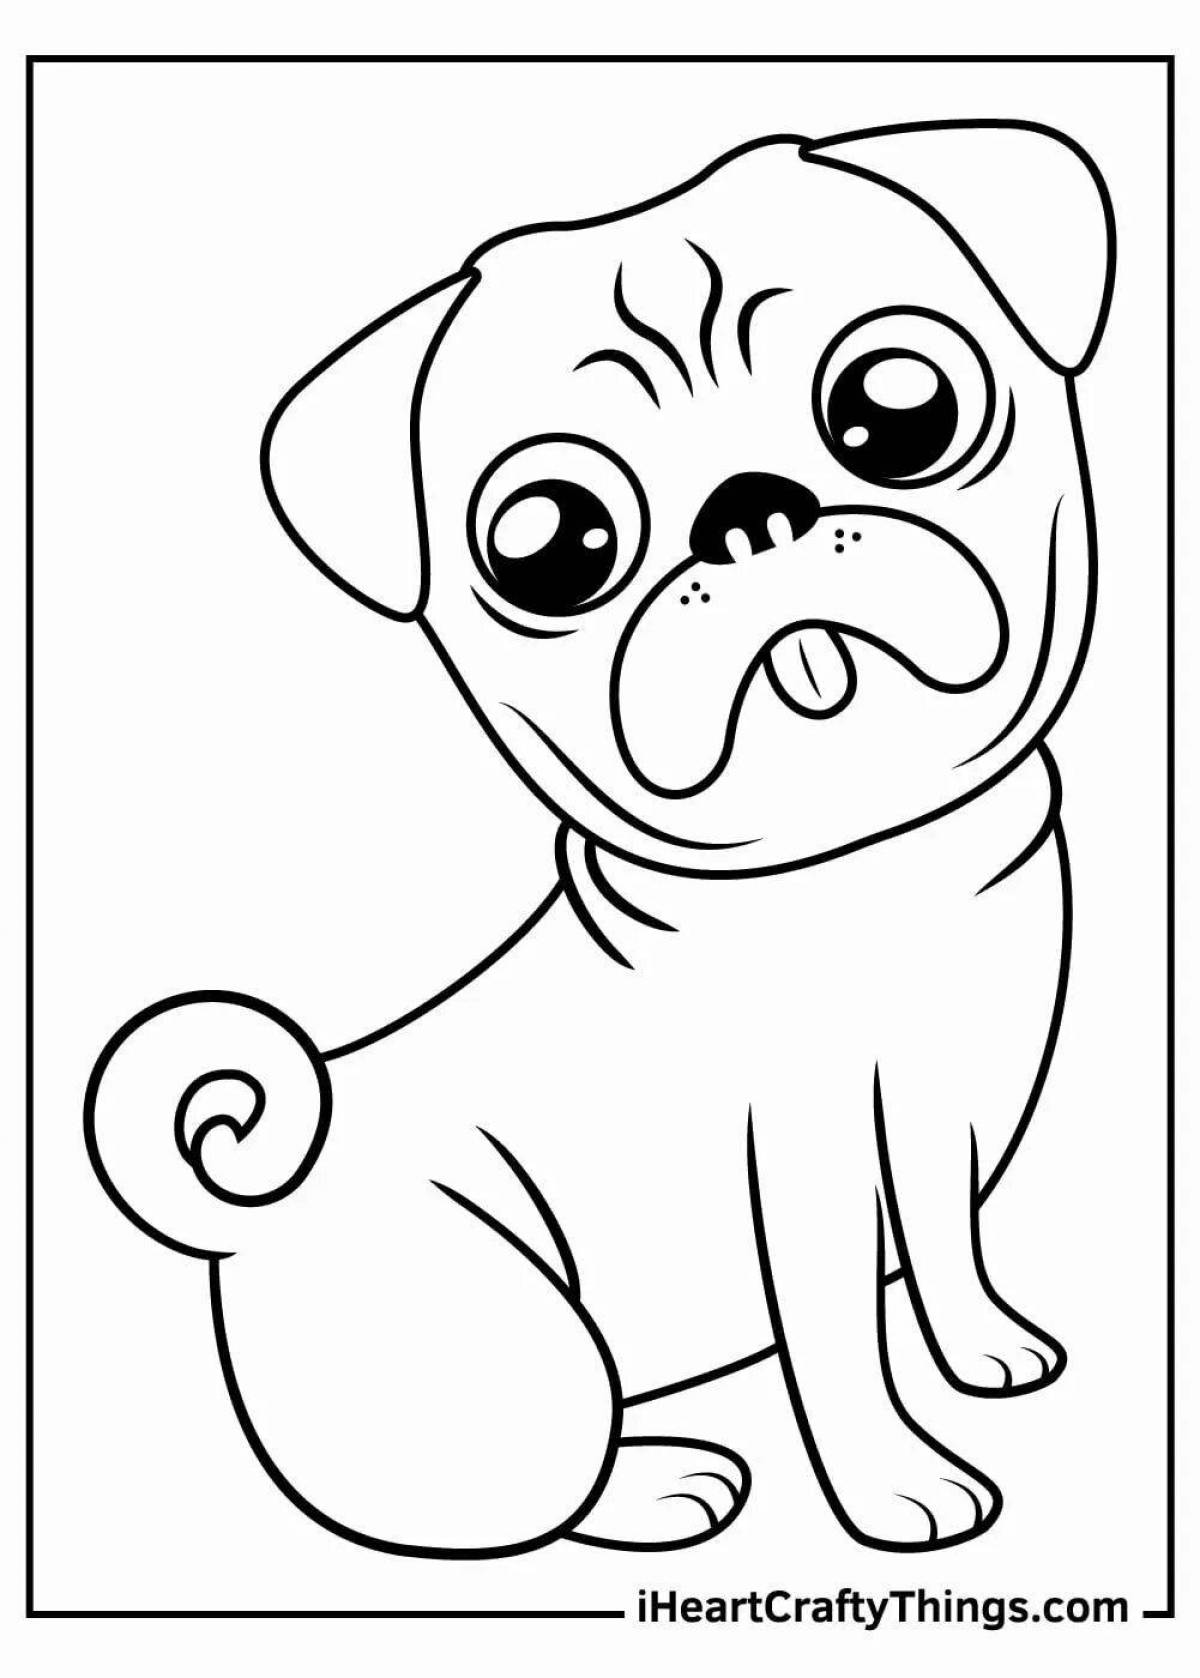 Adorable pug coloring book